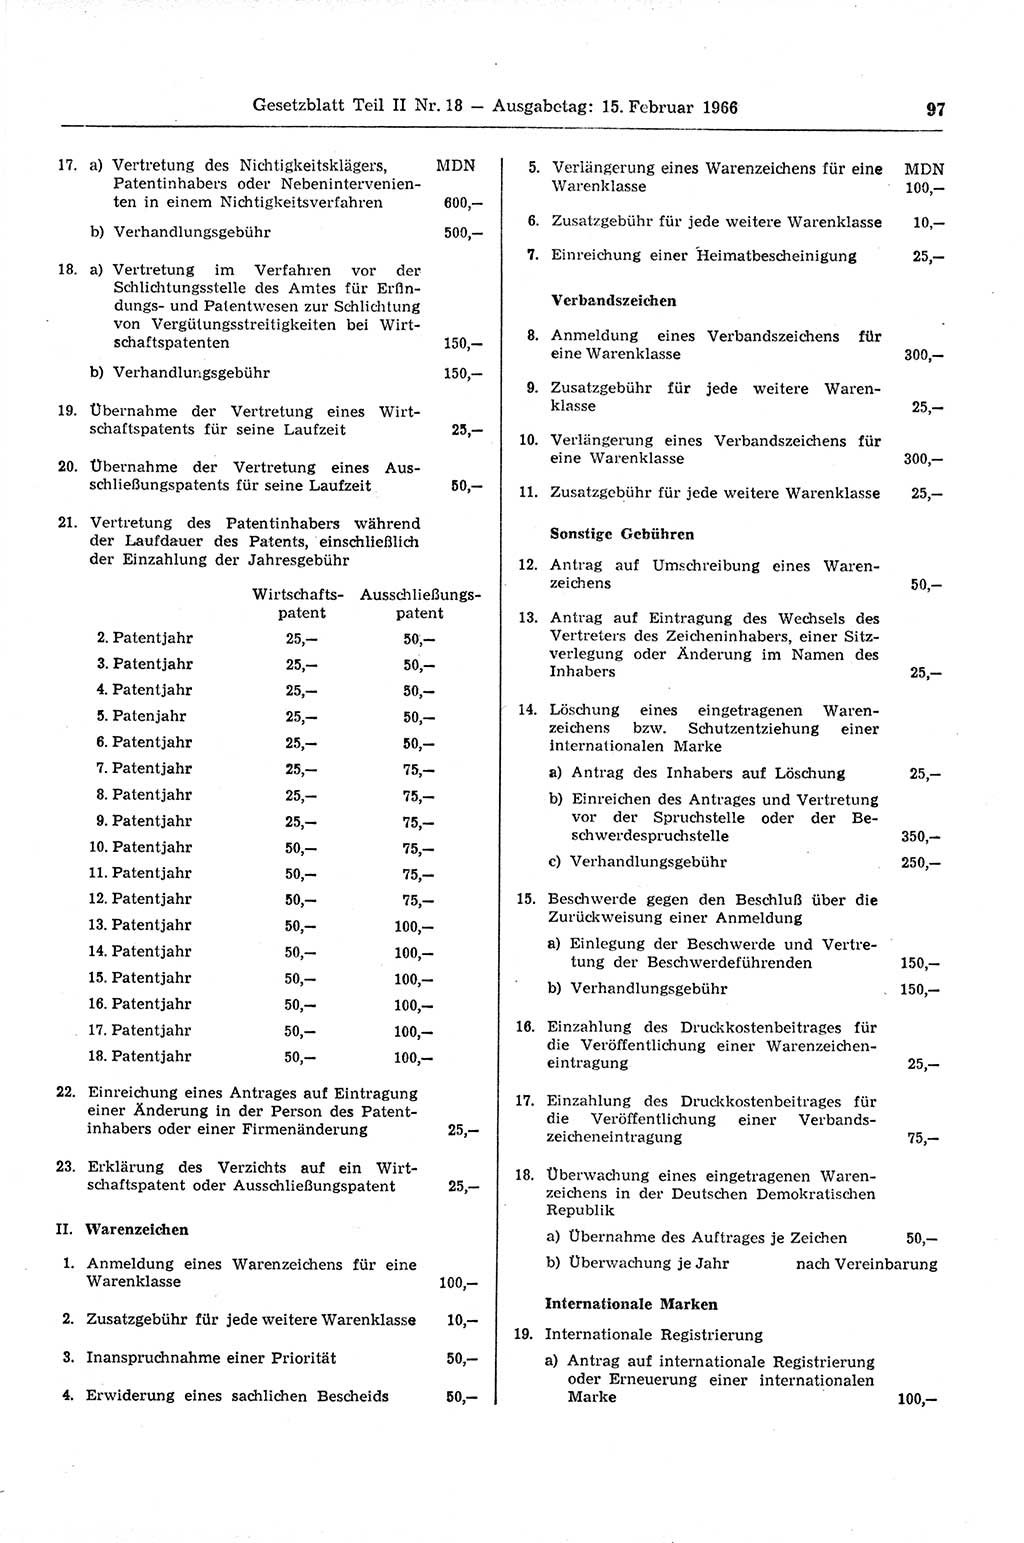 Gesetzblatt (GBl.) der Deutschen Demokratischen Republik (DDR) Teil ⅠⅠ 1966, Seite 97 (GBl. DDR ⅠⅠ 1966, S. 97)